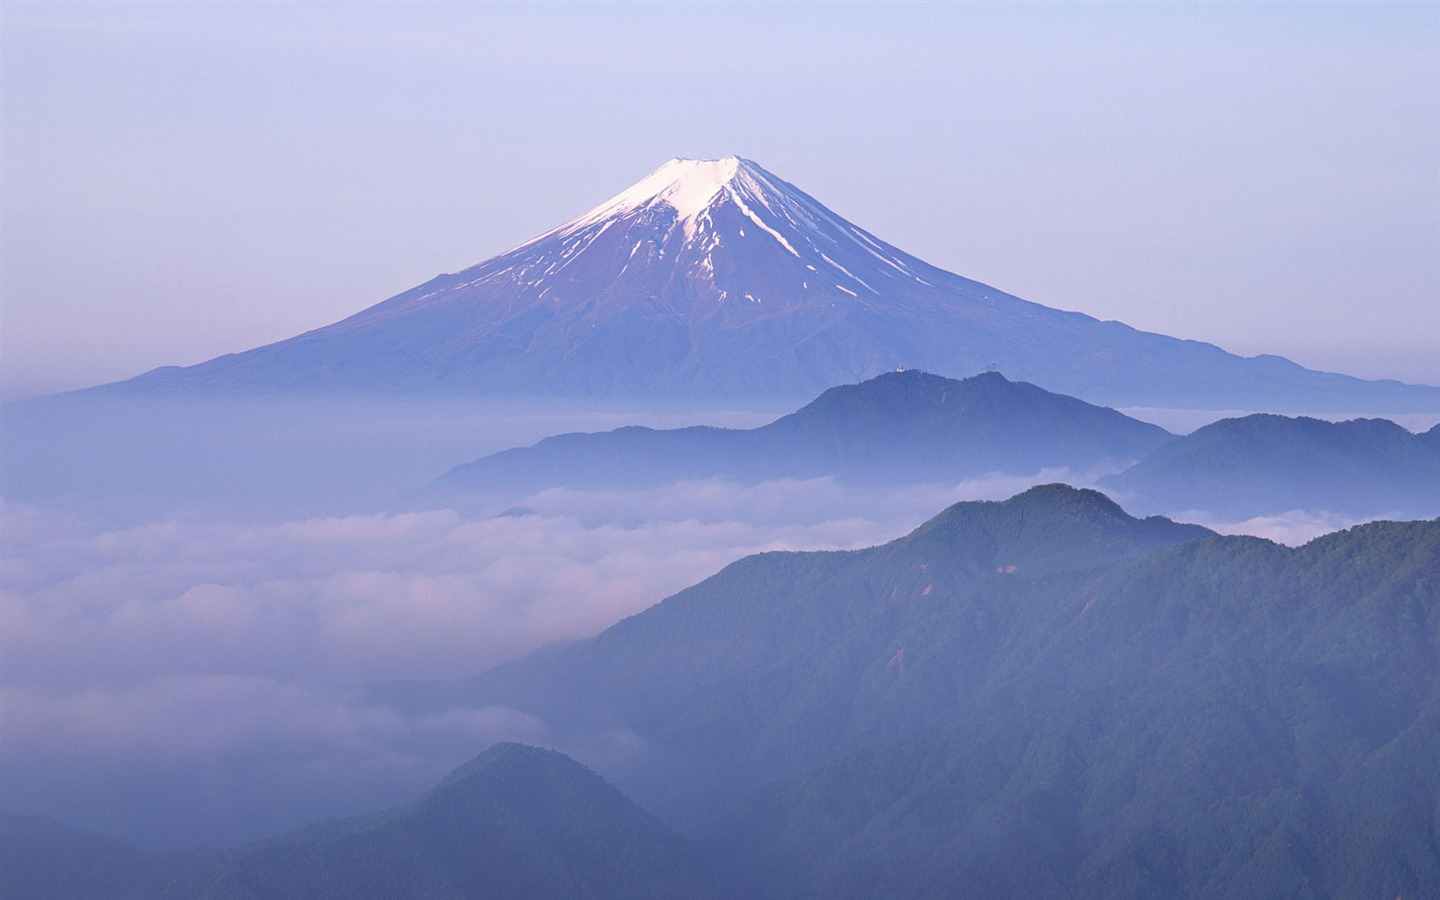 日本富士山壁纸 一 19 1440x900 壁纸下载 日本富士山壁纸 一 风景壁纸 V3壁纸站